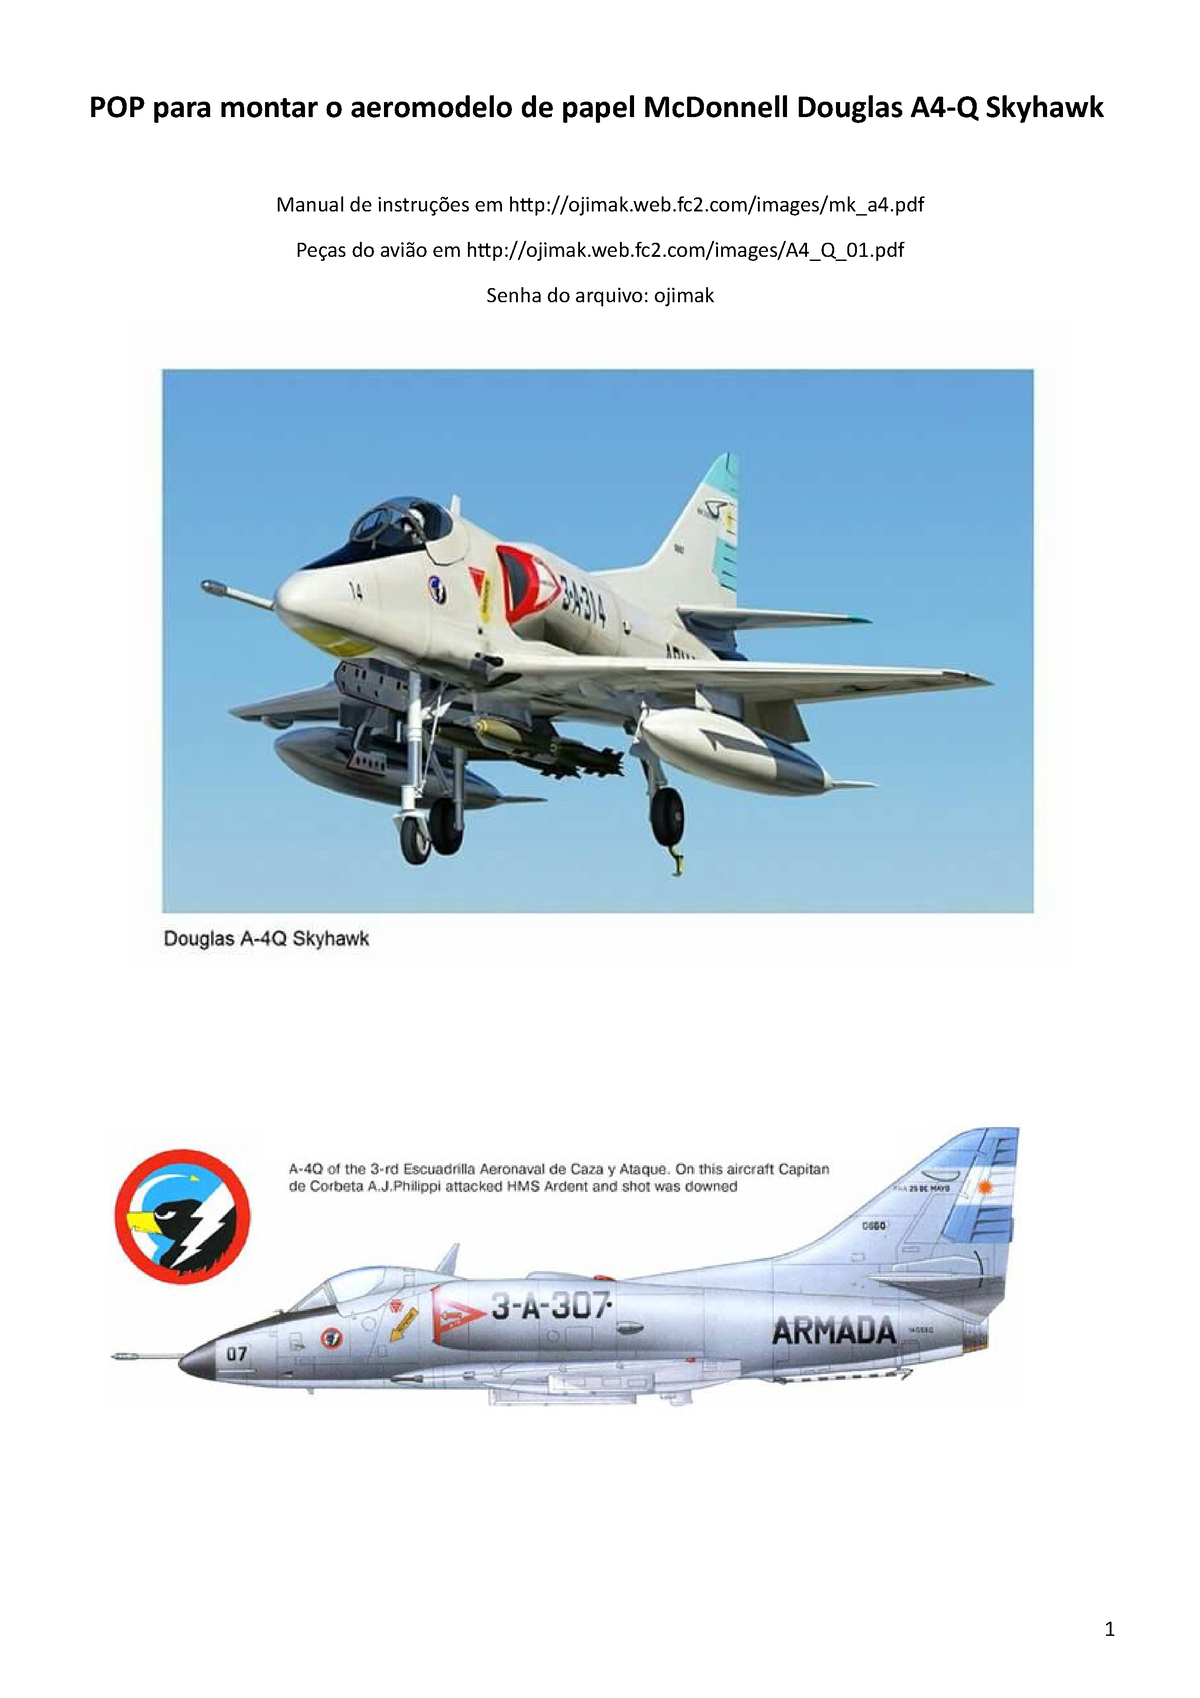 Imprimir Manual Para Montagem Do Avião A4 Skyhawk Pop Para Montar O Aeromodelo De Papel